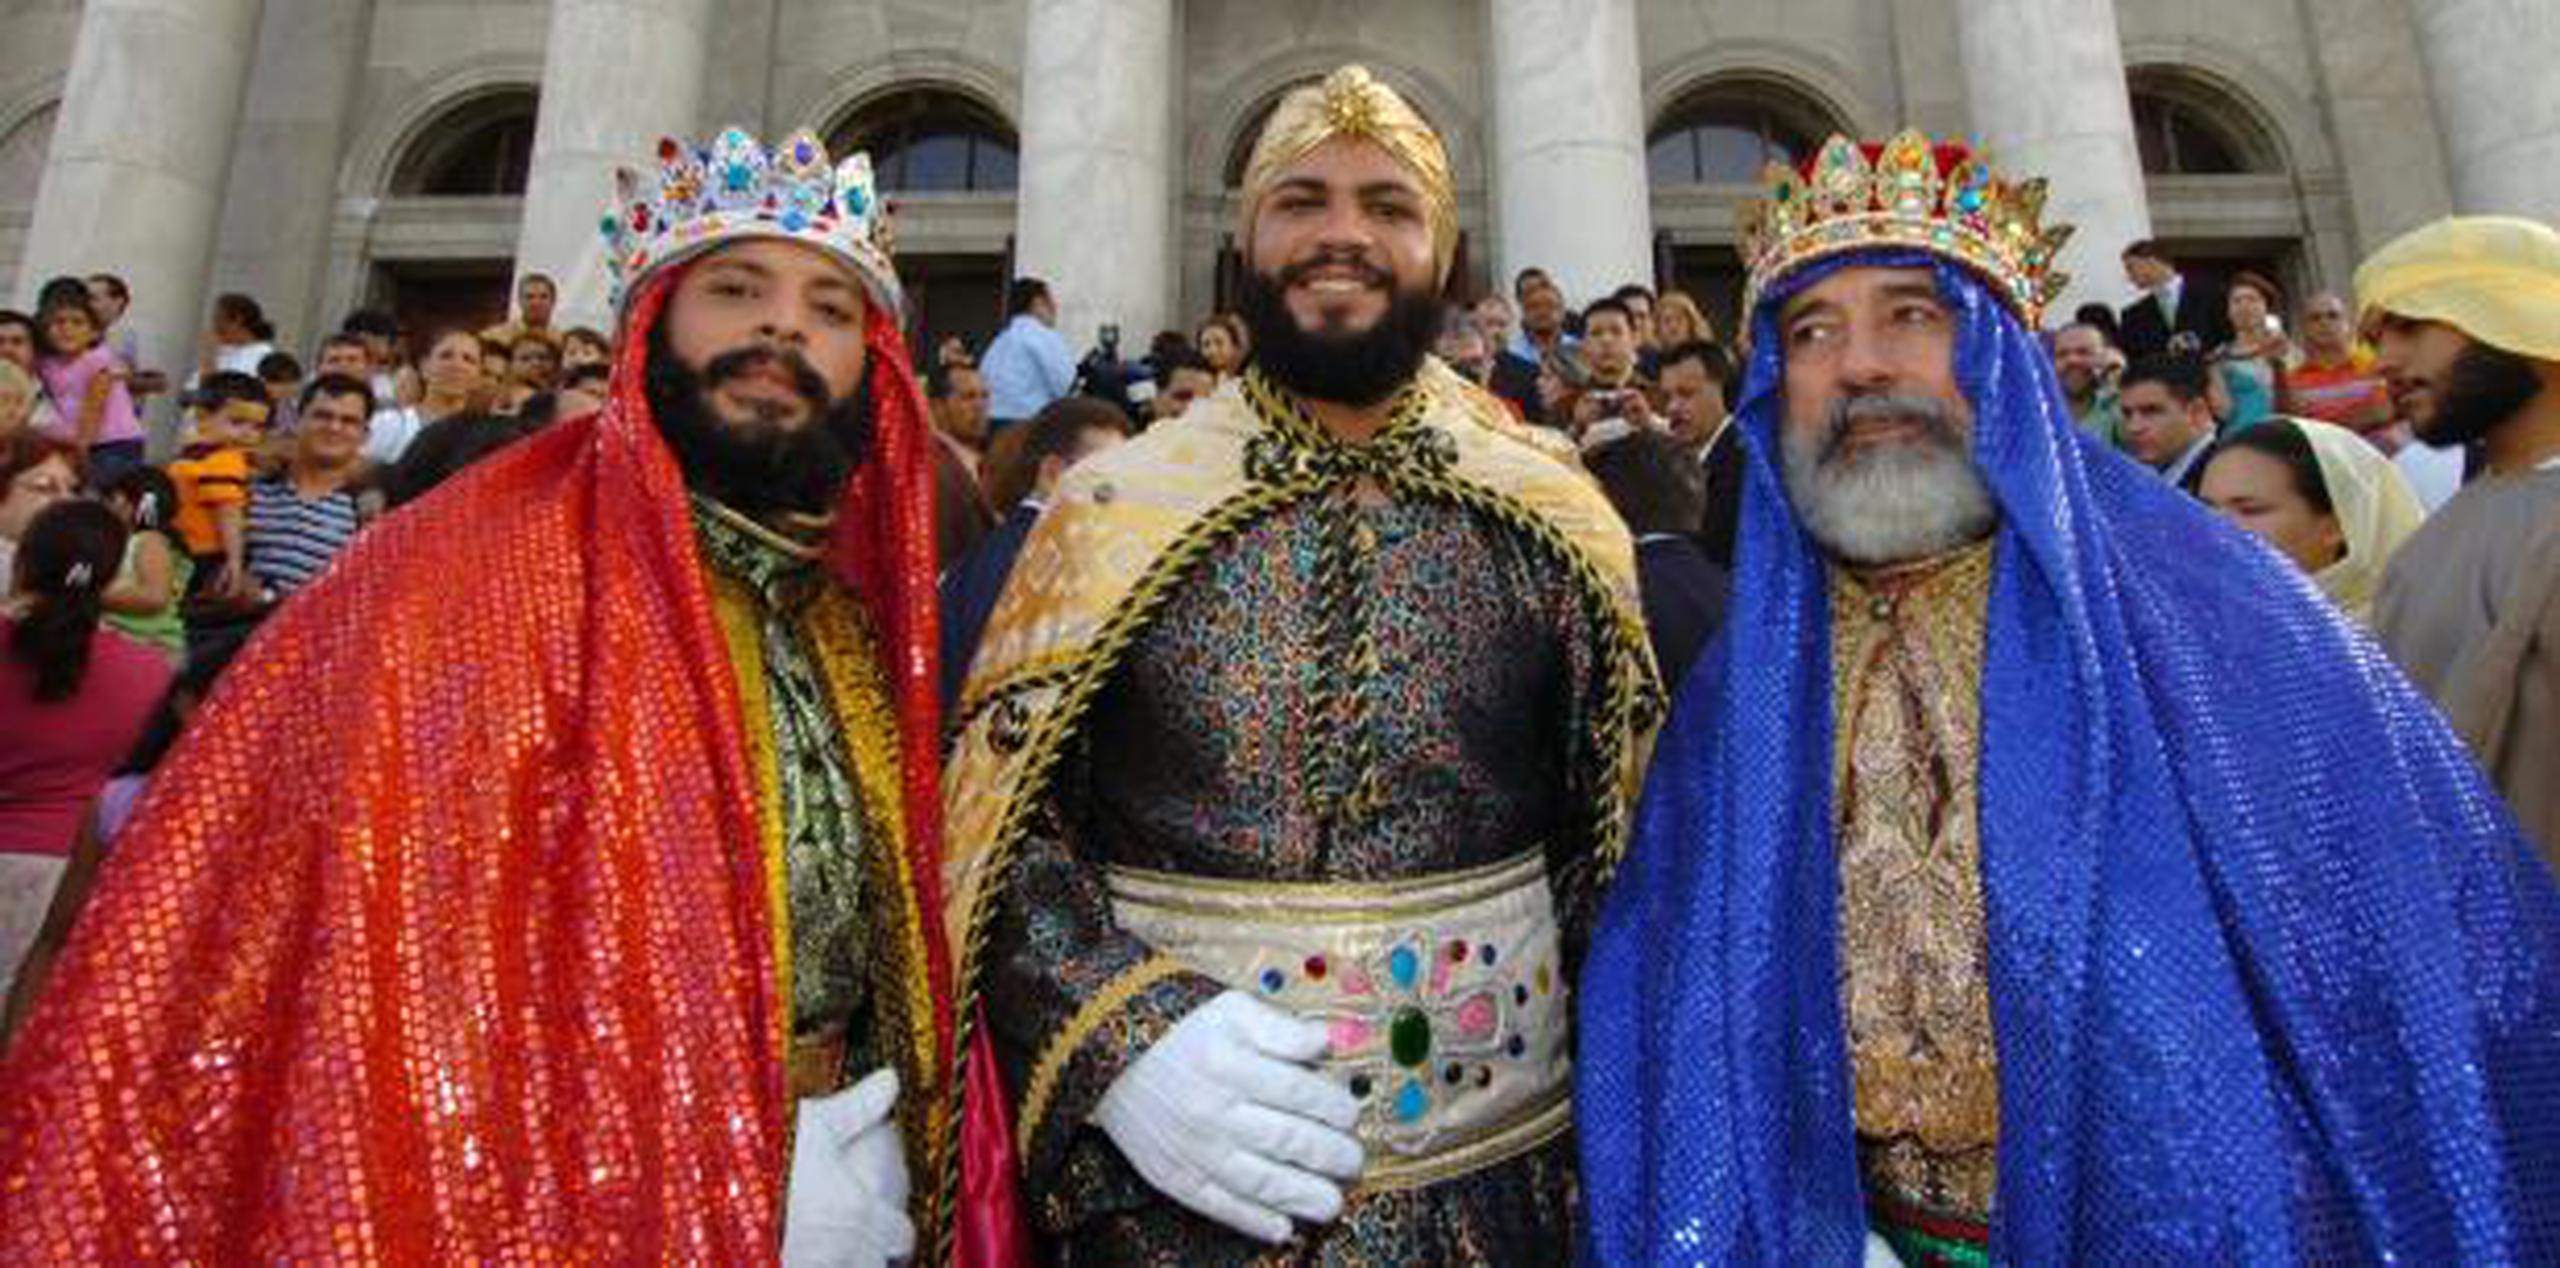 Los Reyes juanadinos durante una visita al Capitolio. (Archivo)